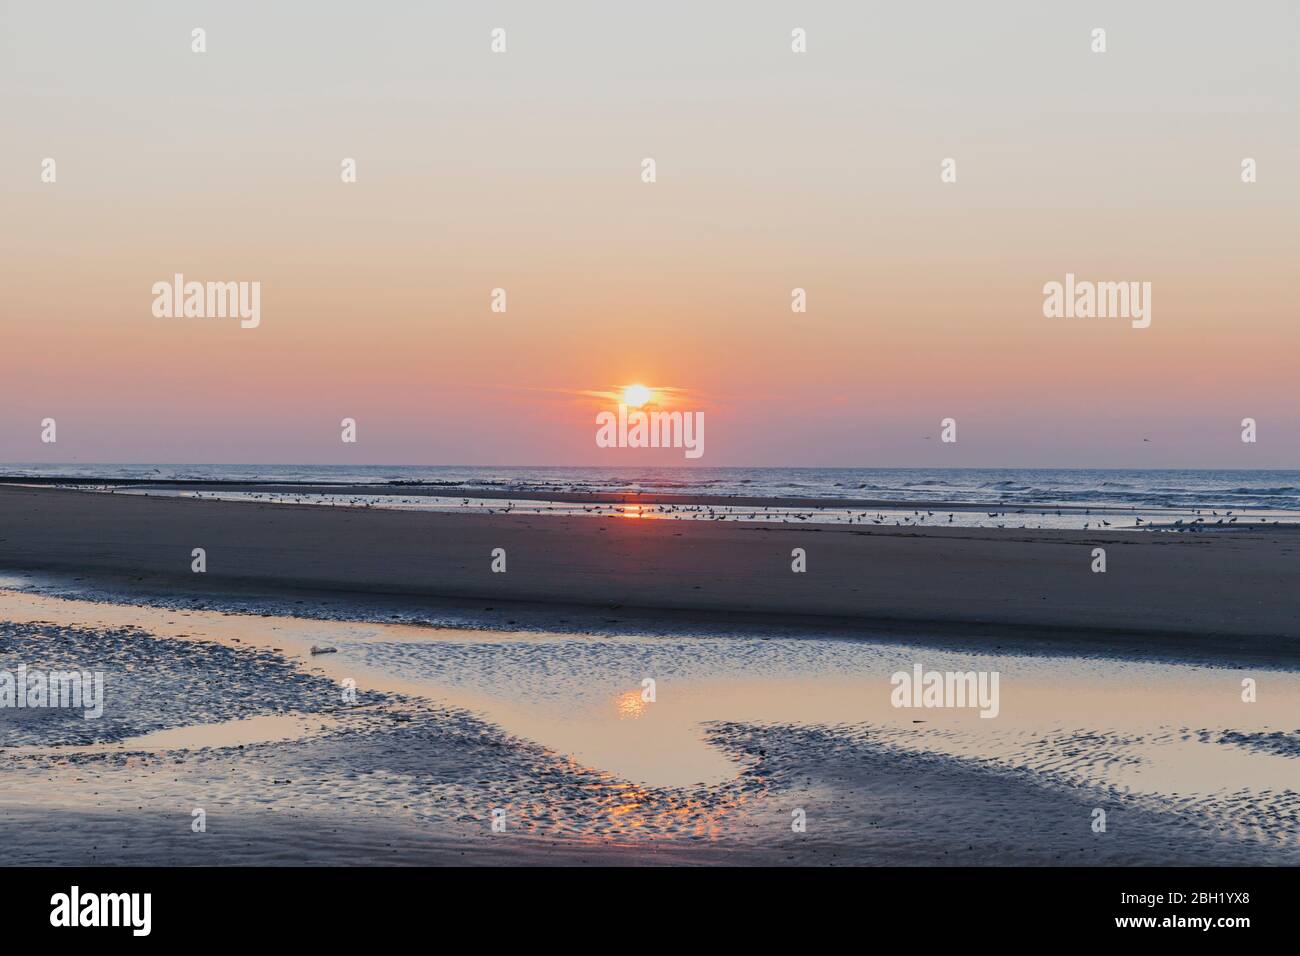 Vue lointaine des silhouettes sur la rive à la plage contre le ciel orange au coucher du soleil, côte de la mer du Nord, Flandre, Belgique Banque D'Images